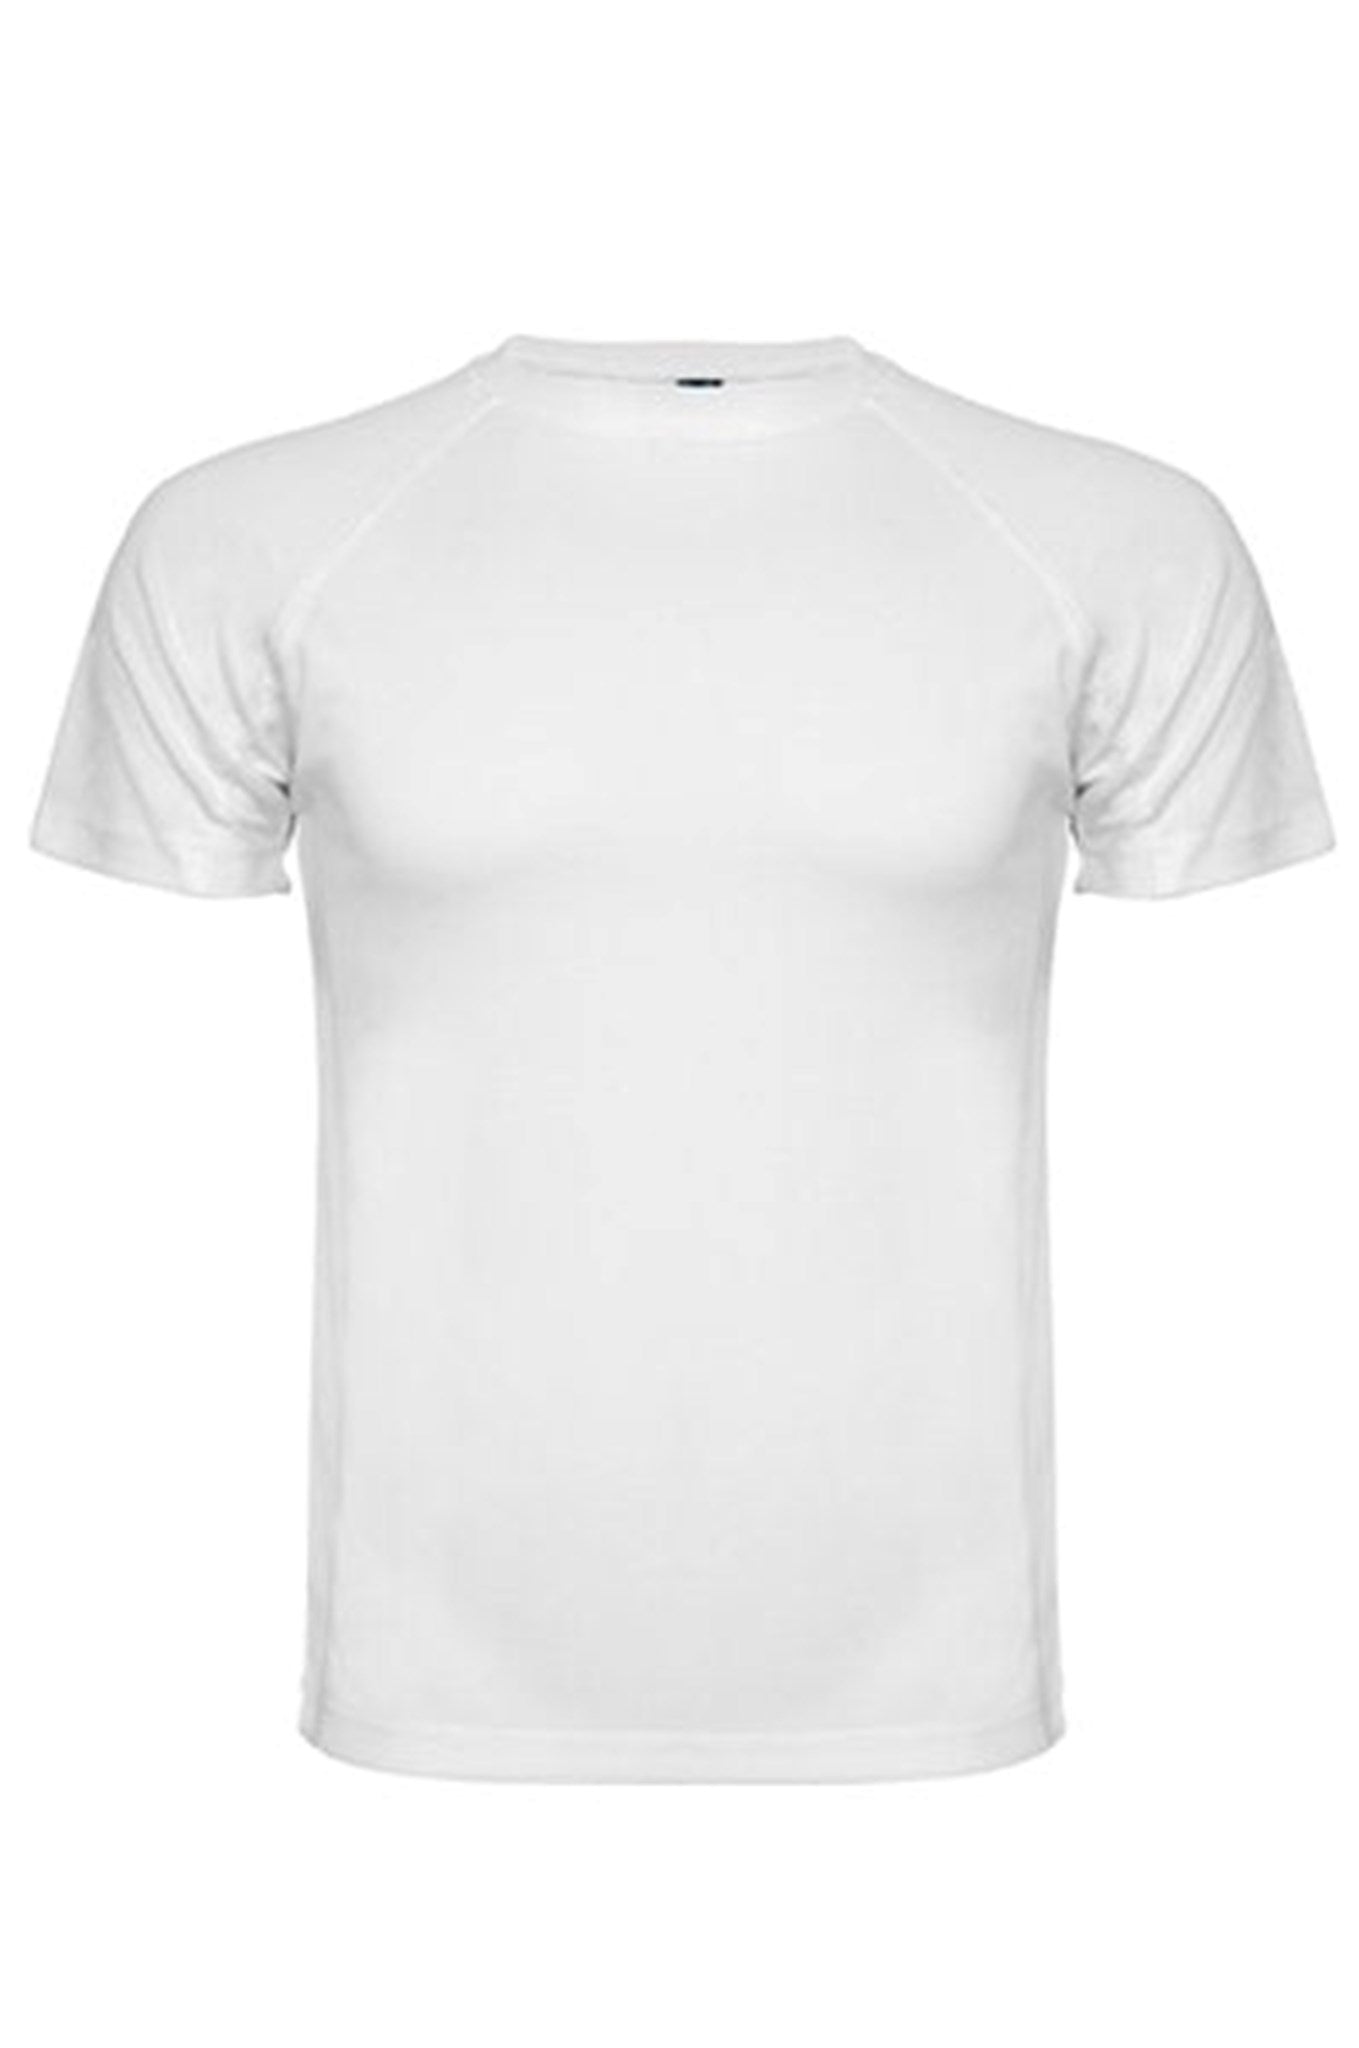 Trenings T-shirt - Hvit - TeeShoppen